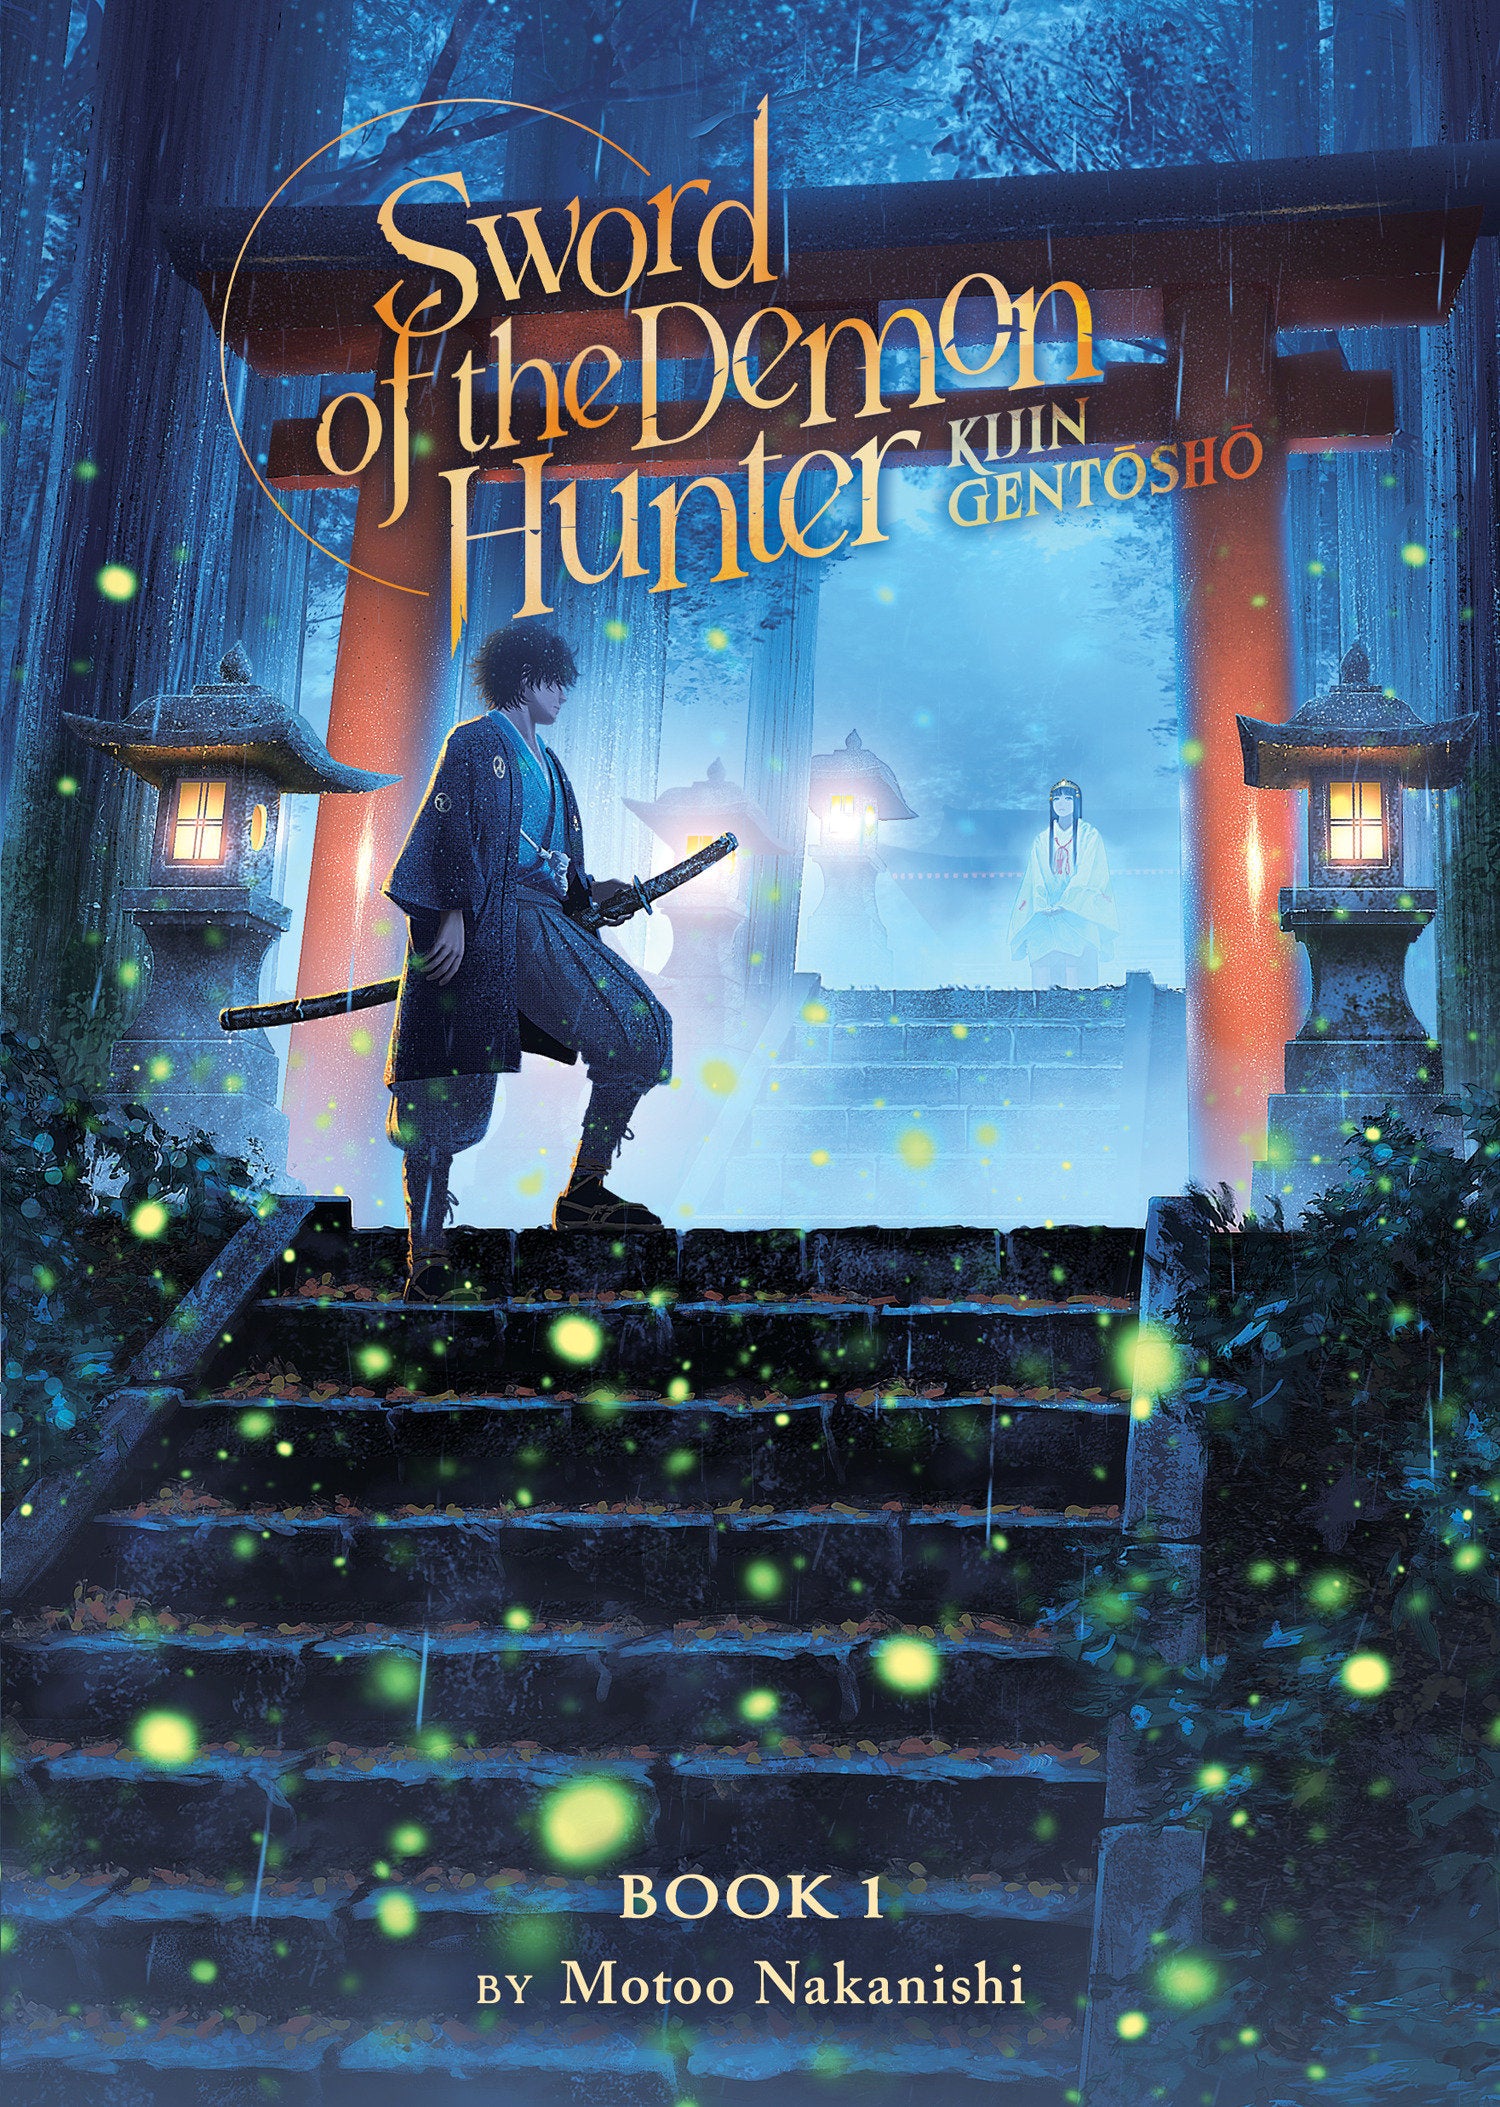 Sword of the Demon Hunter: Kijin Gentosho (Light Novel) Vol. 01